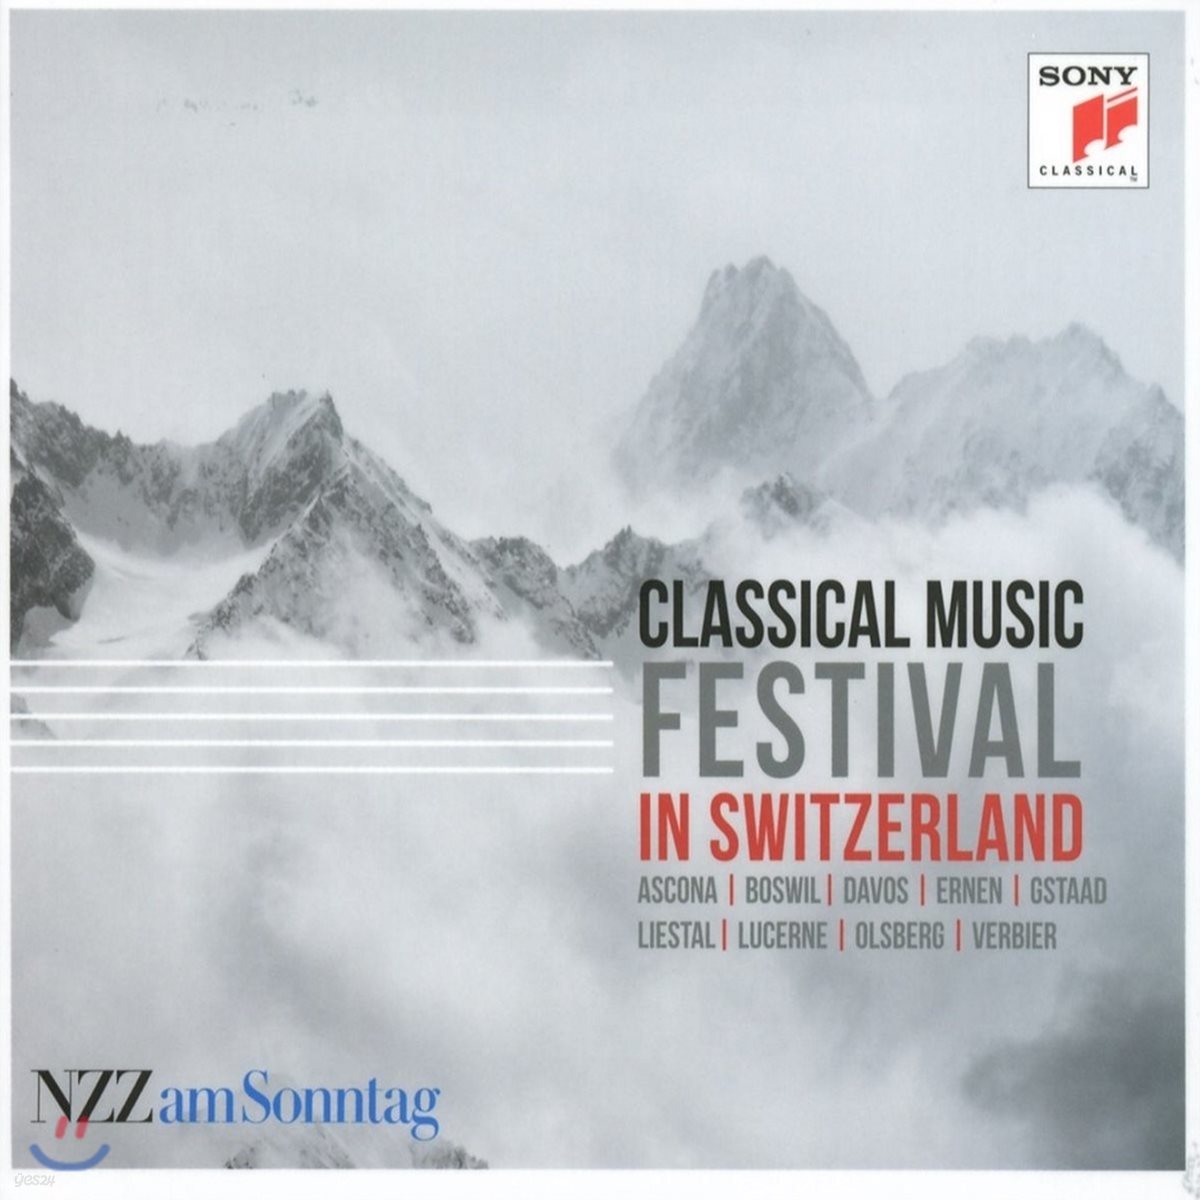 스위스 음악제 라이브 (Festival - Classical Music in Switzerland)